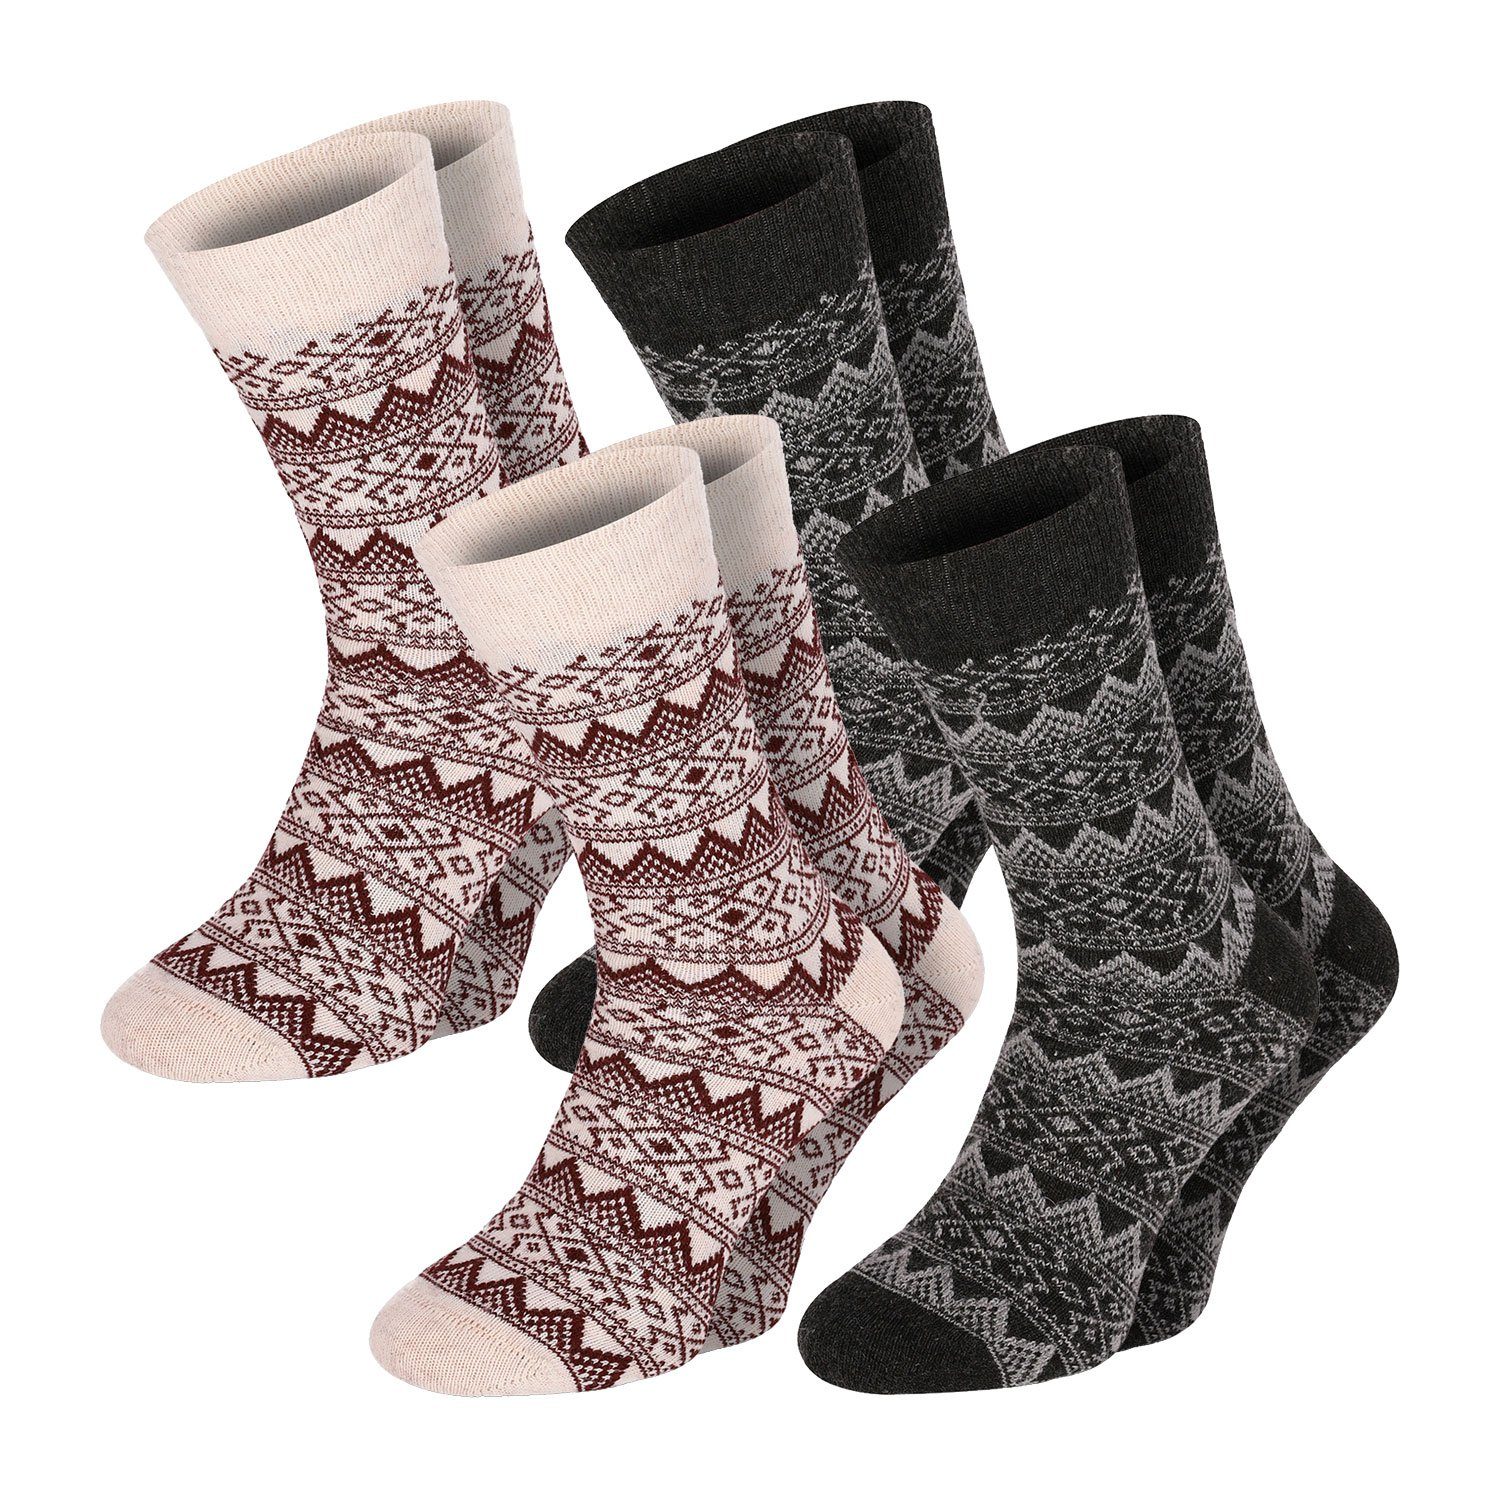 Chili Lifestyle Strümpfe Socken Wool Classic Winter Schaf Wolle Damen Herren Warm farbig 4 Paar